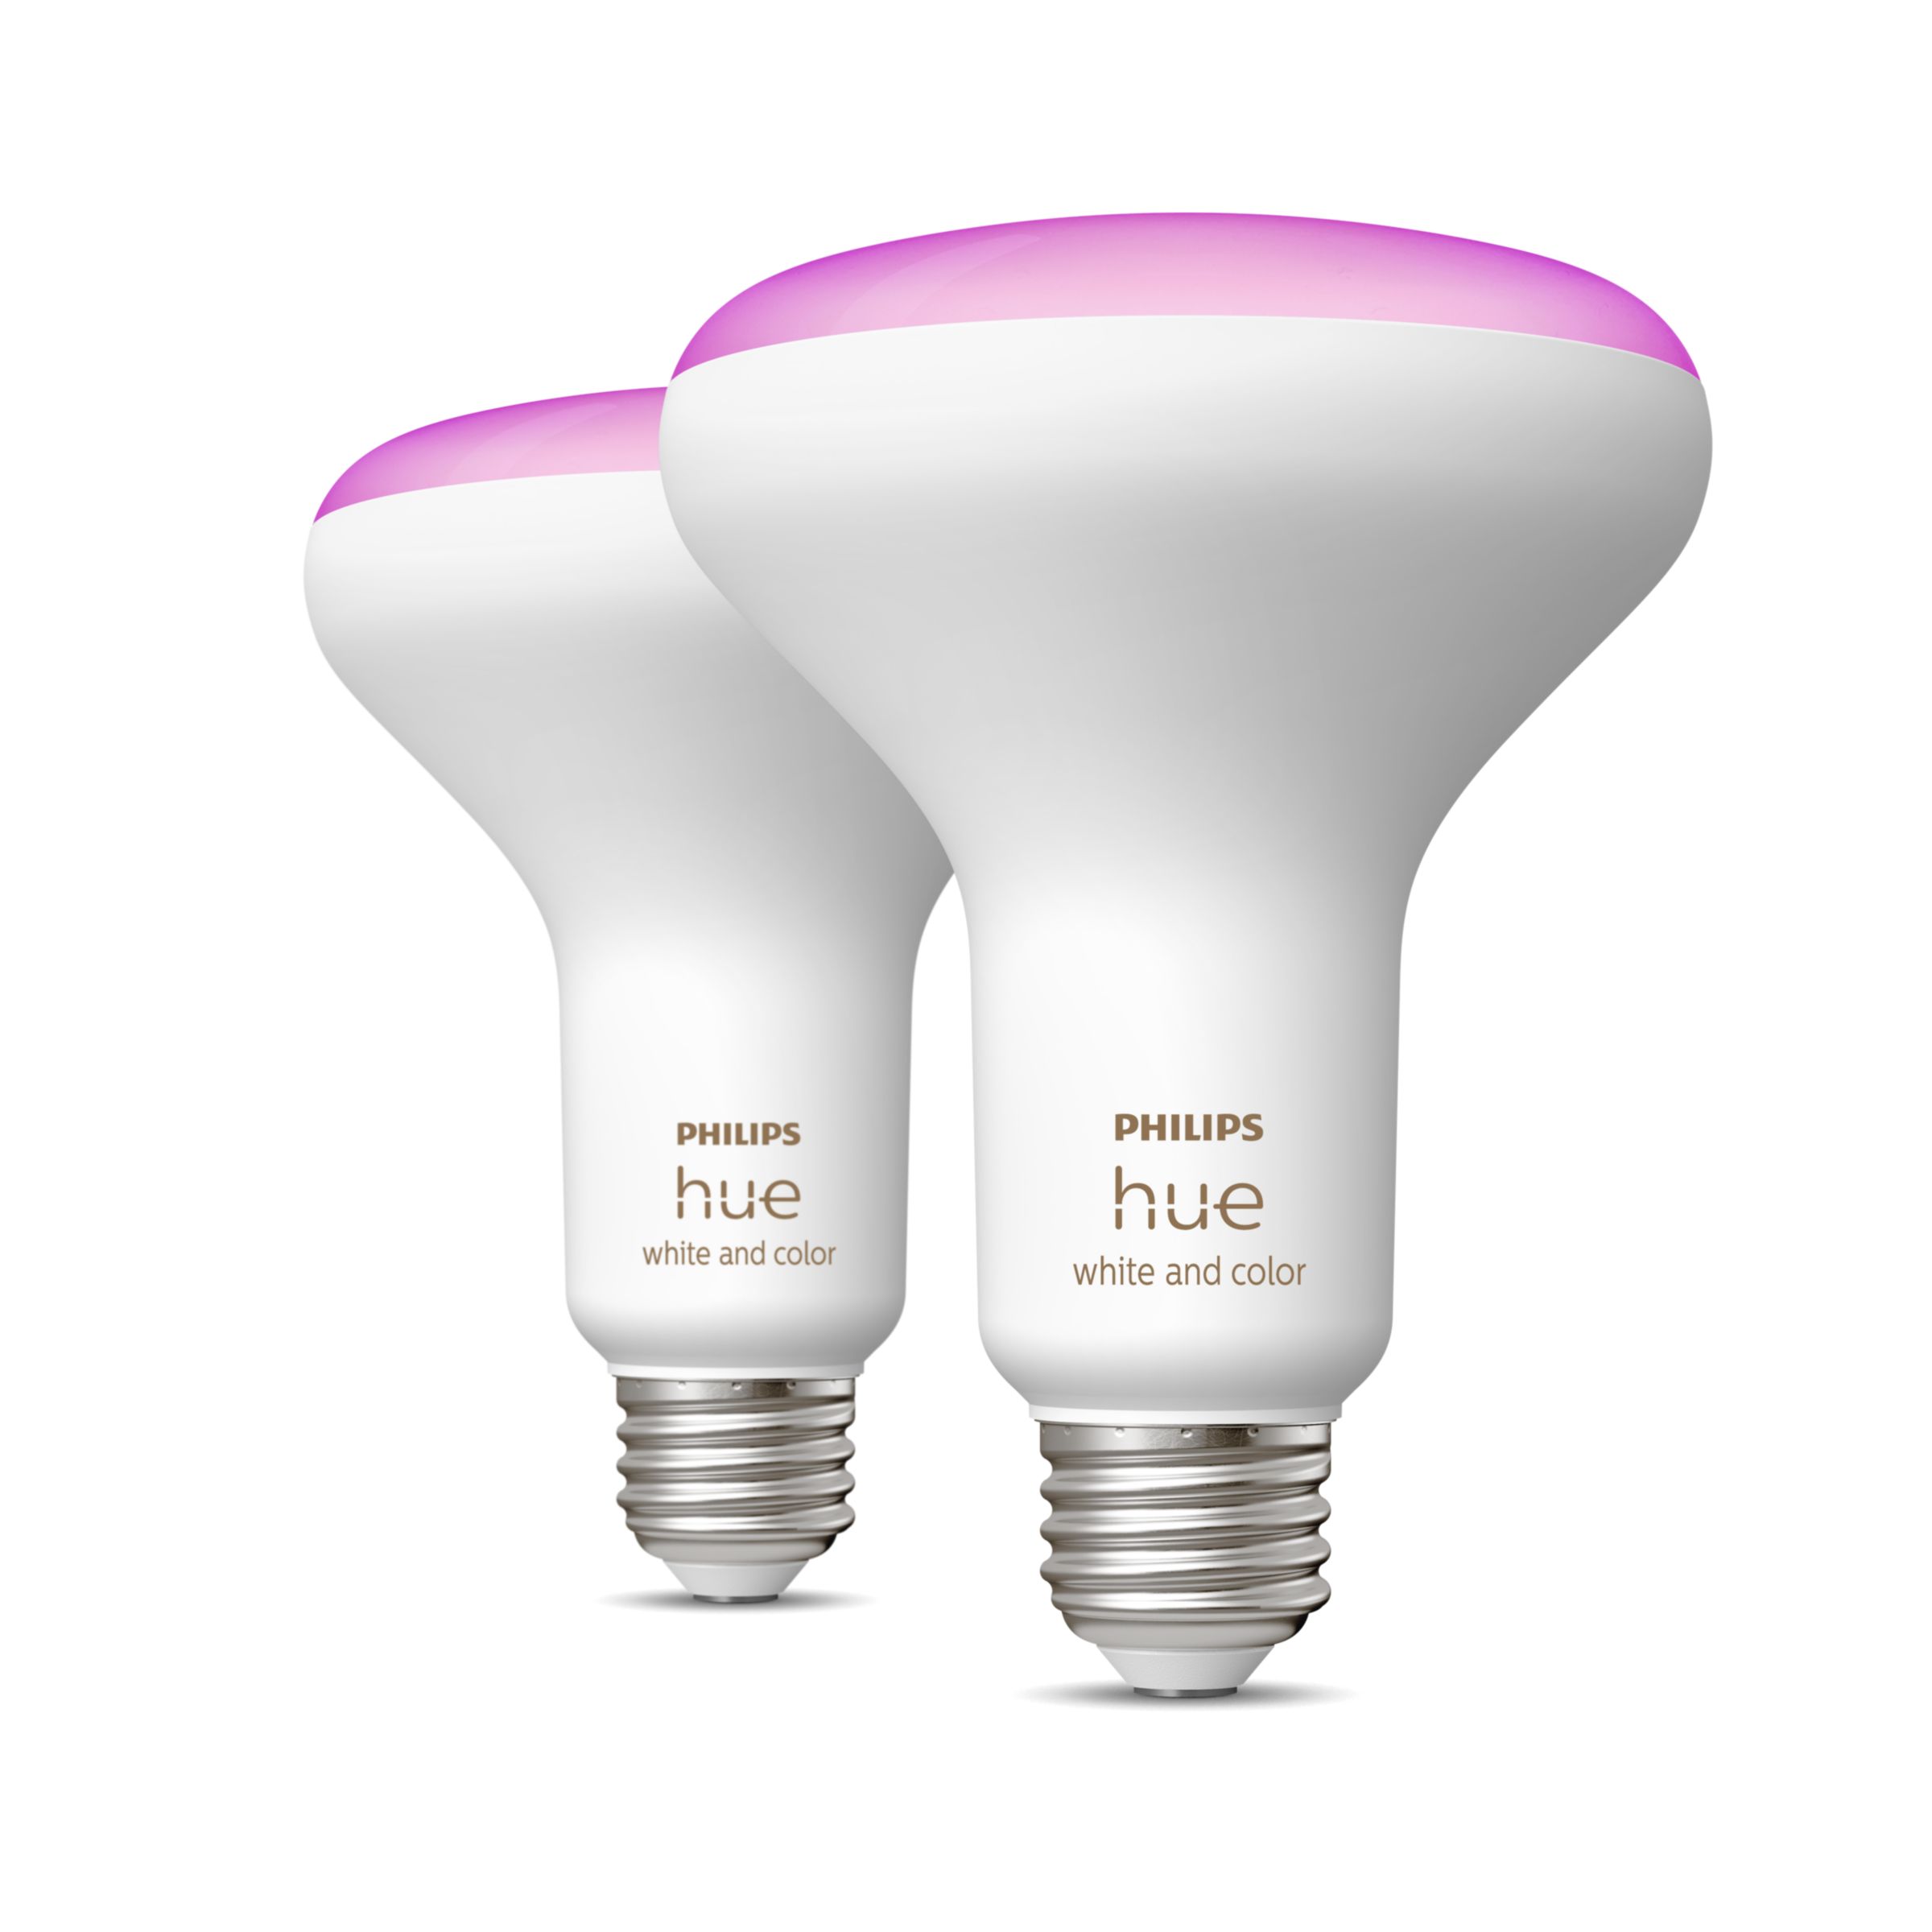 Kameel Tegenstander kanker Hue White and color ambiance BR30 - E26 smart bulb - (2-pack) | Philips Hue  US